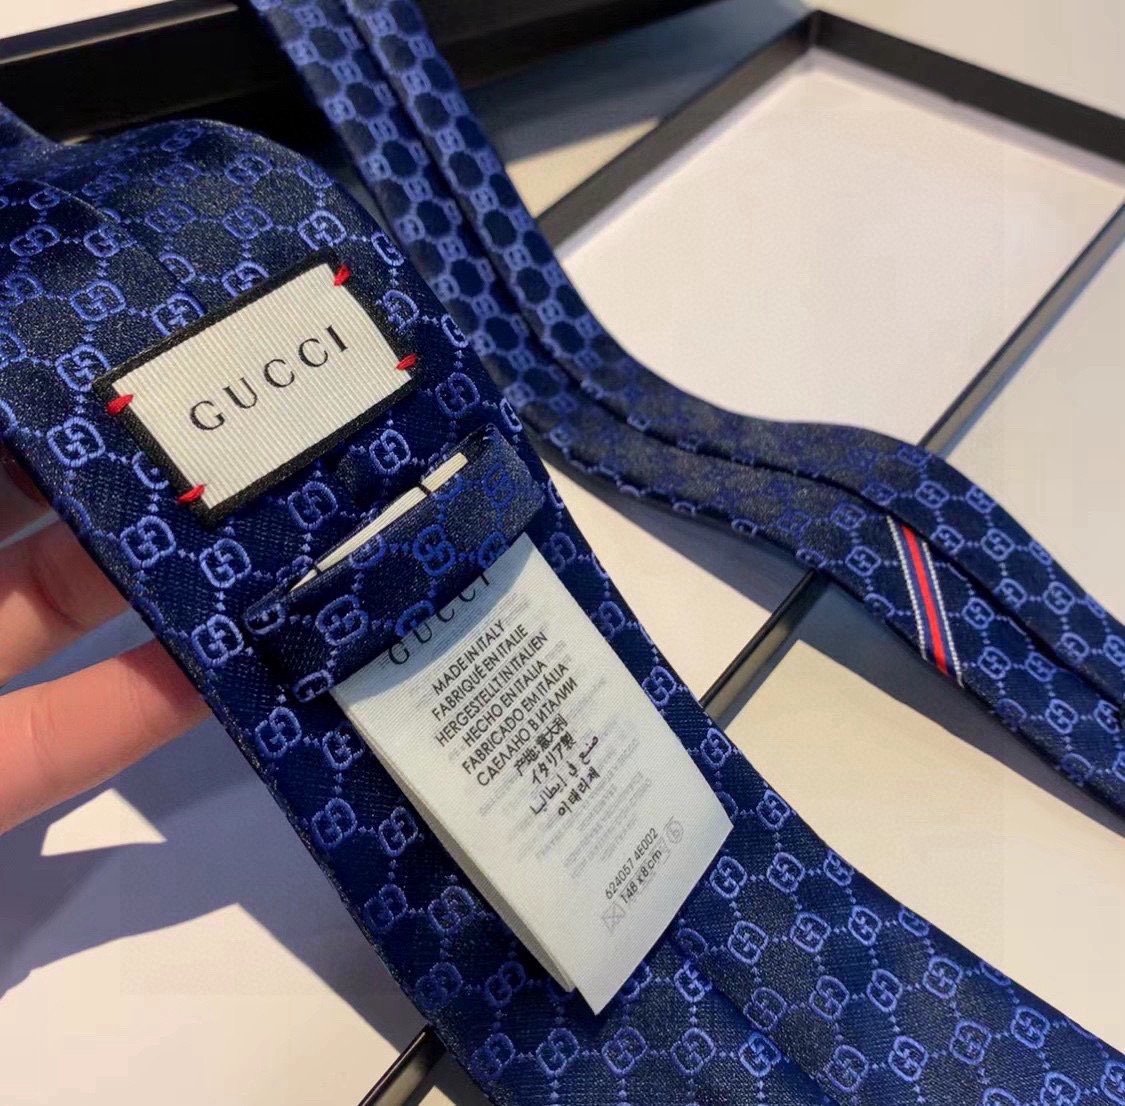 特价配包装于1970年代首次使用的GG标识由始于1930年代的早期Gucci菱形设计演化而来其后便成为G